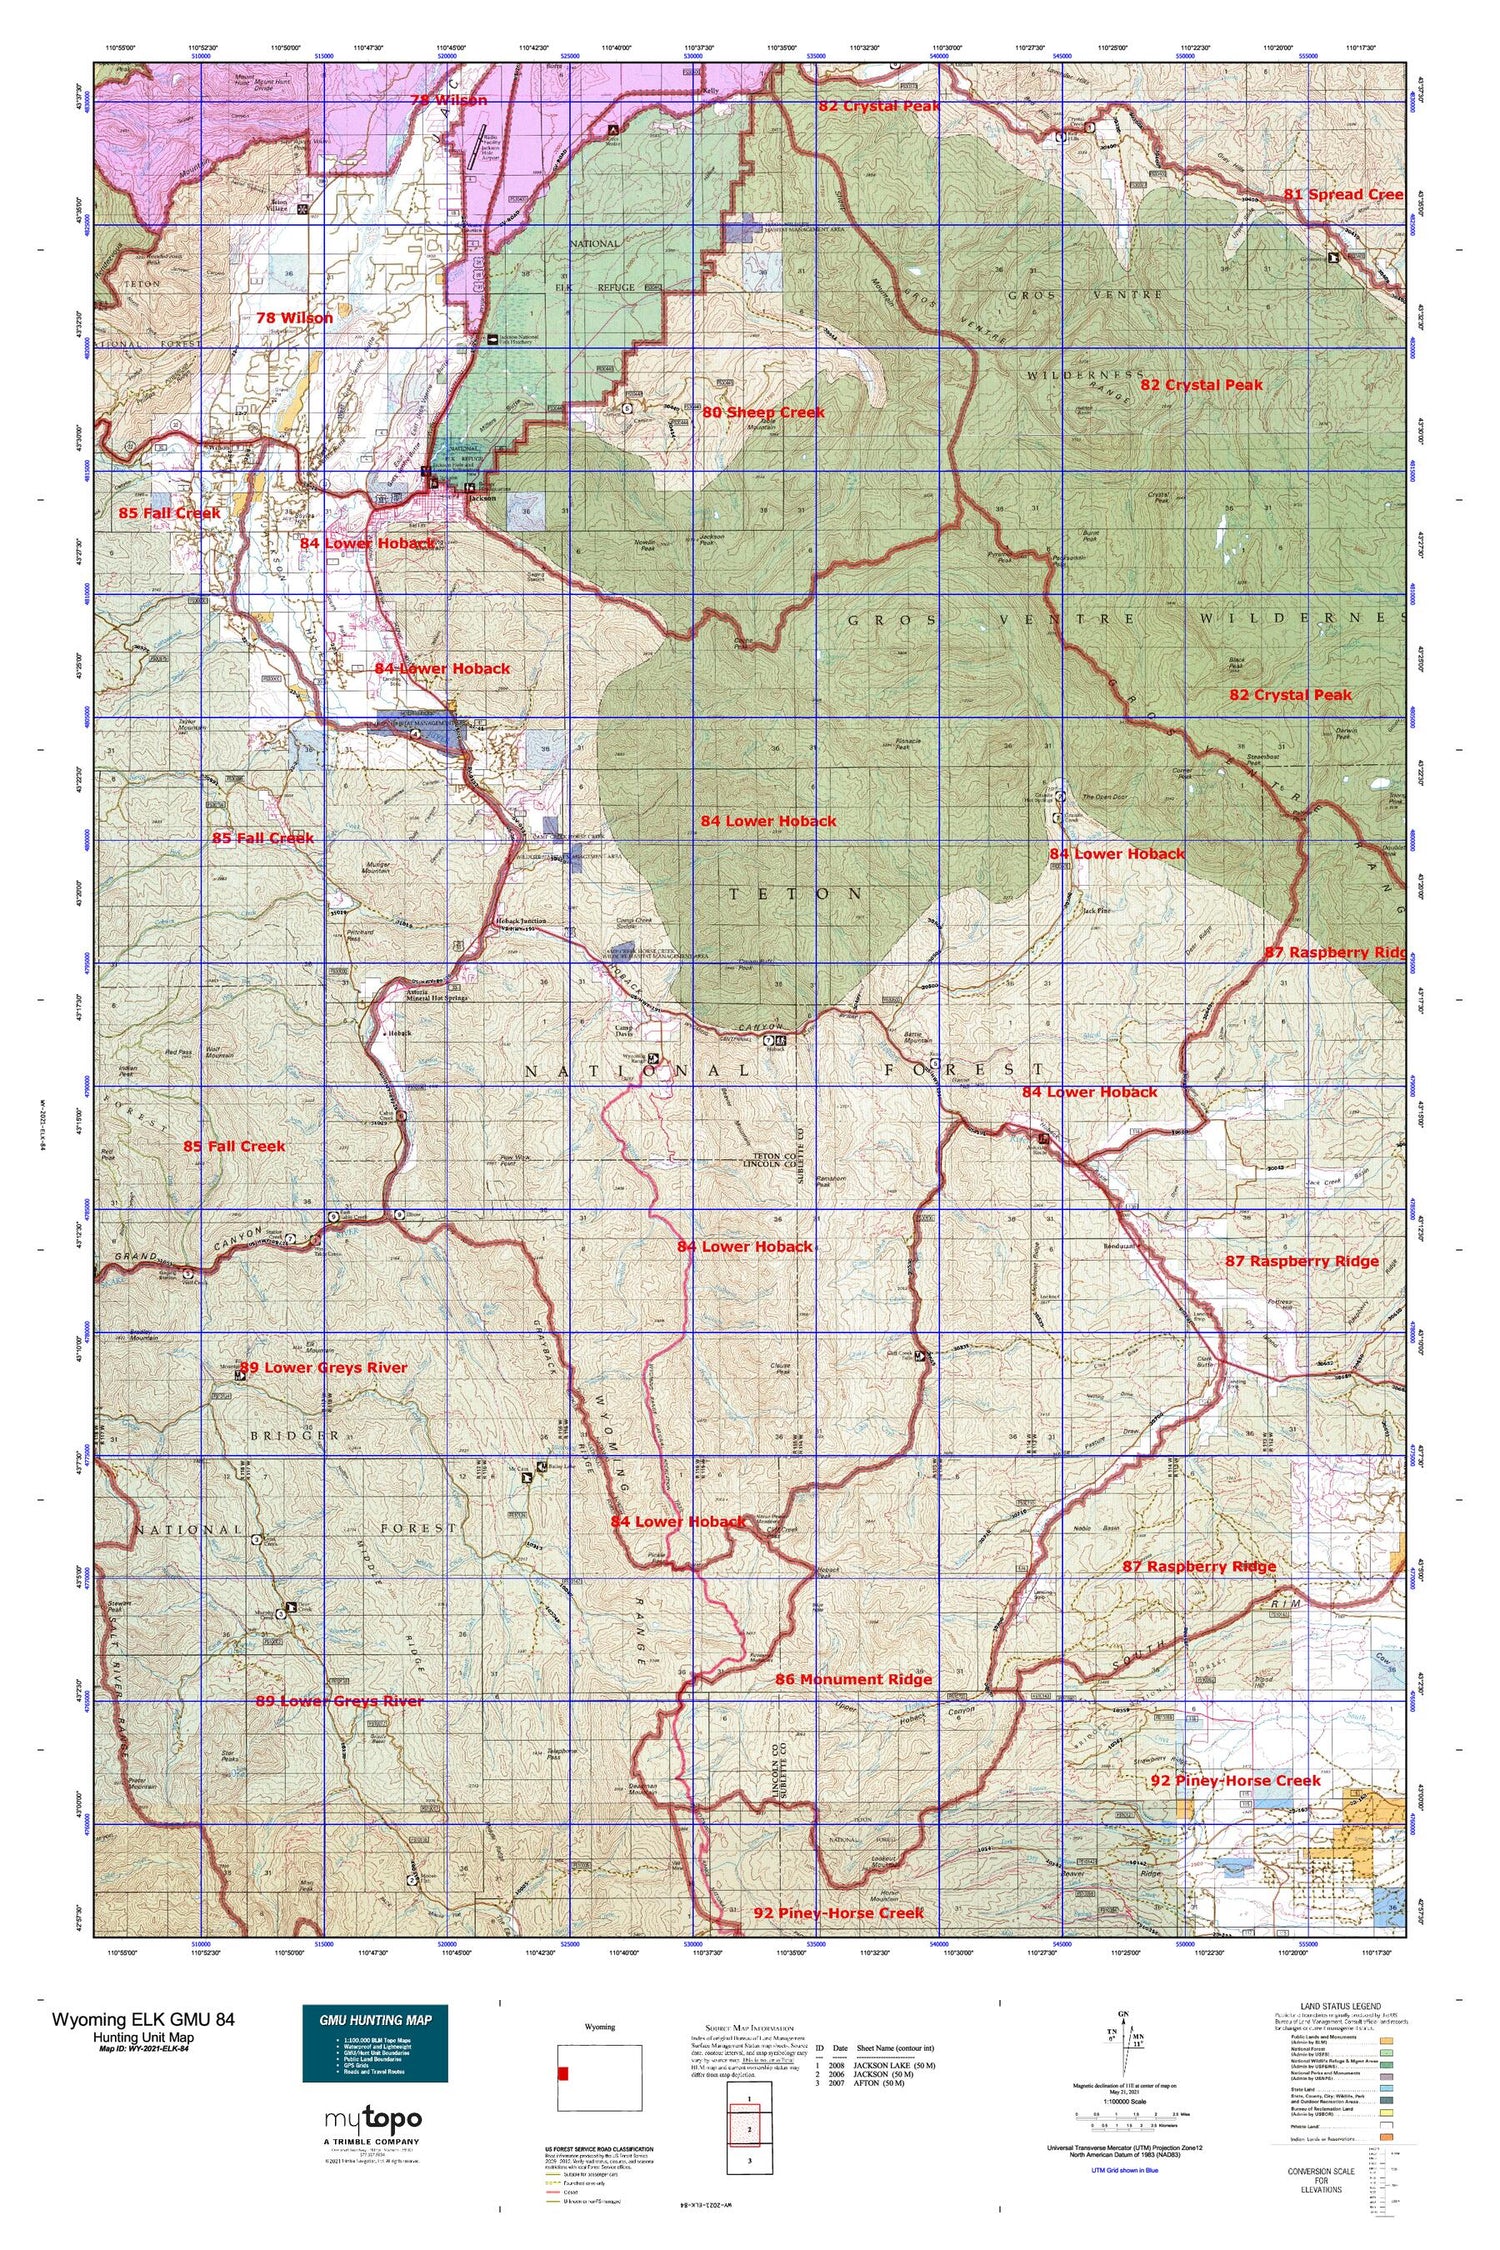 Wyoming Elk GMU 84 Map Image